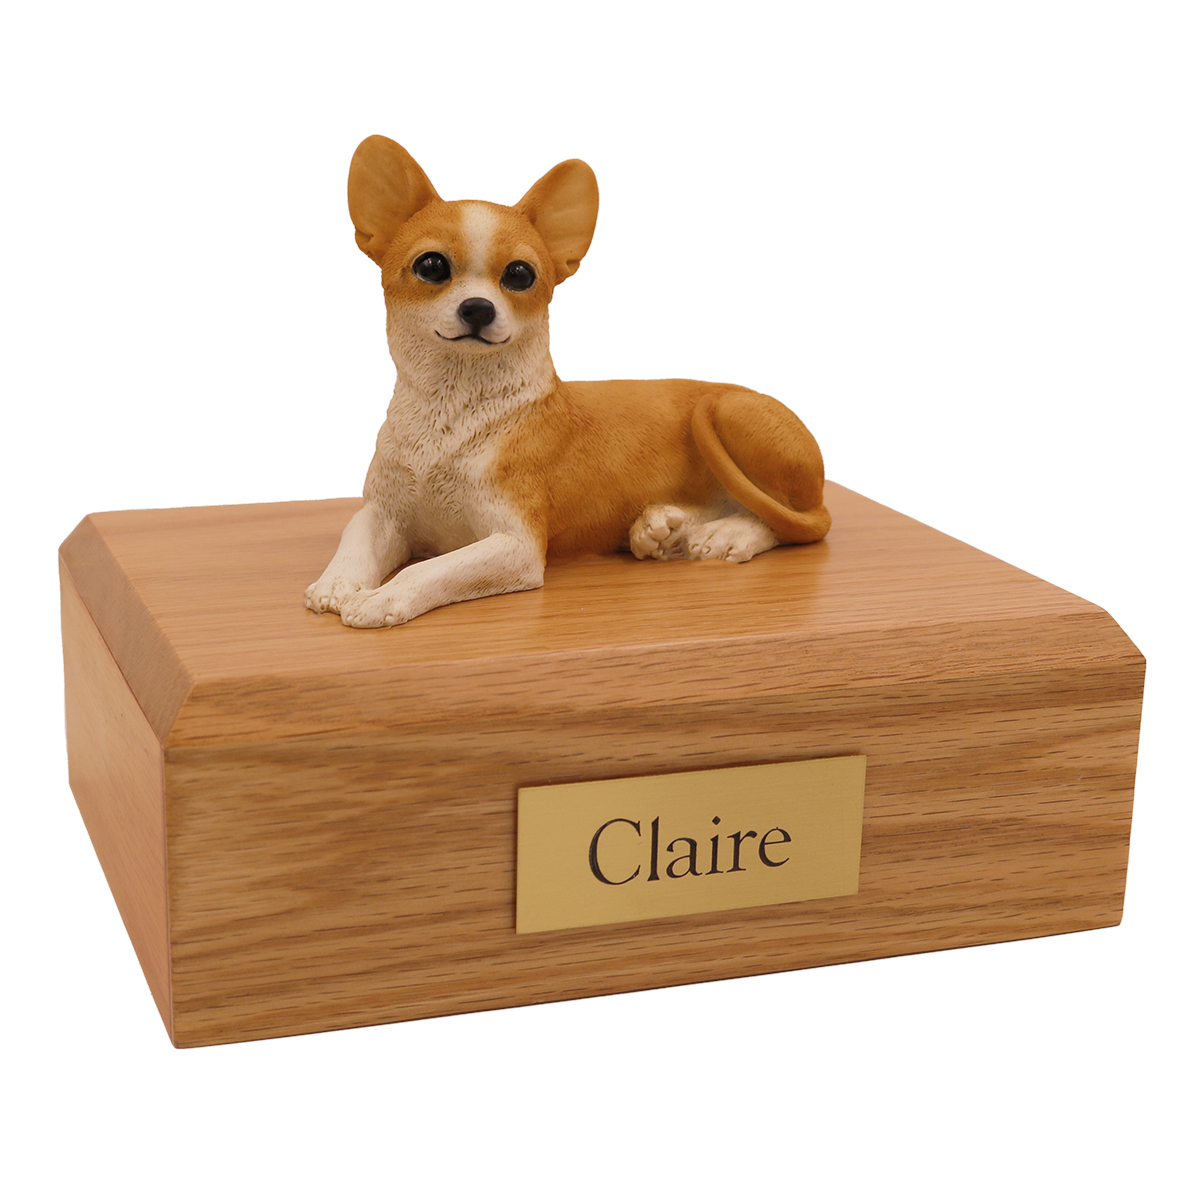 Dog, Chihuahua - Figurine Urn